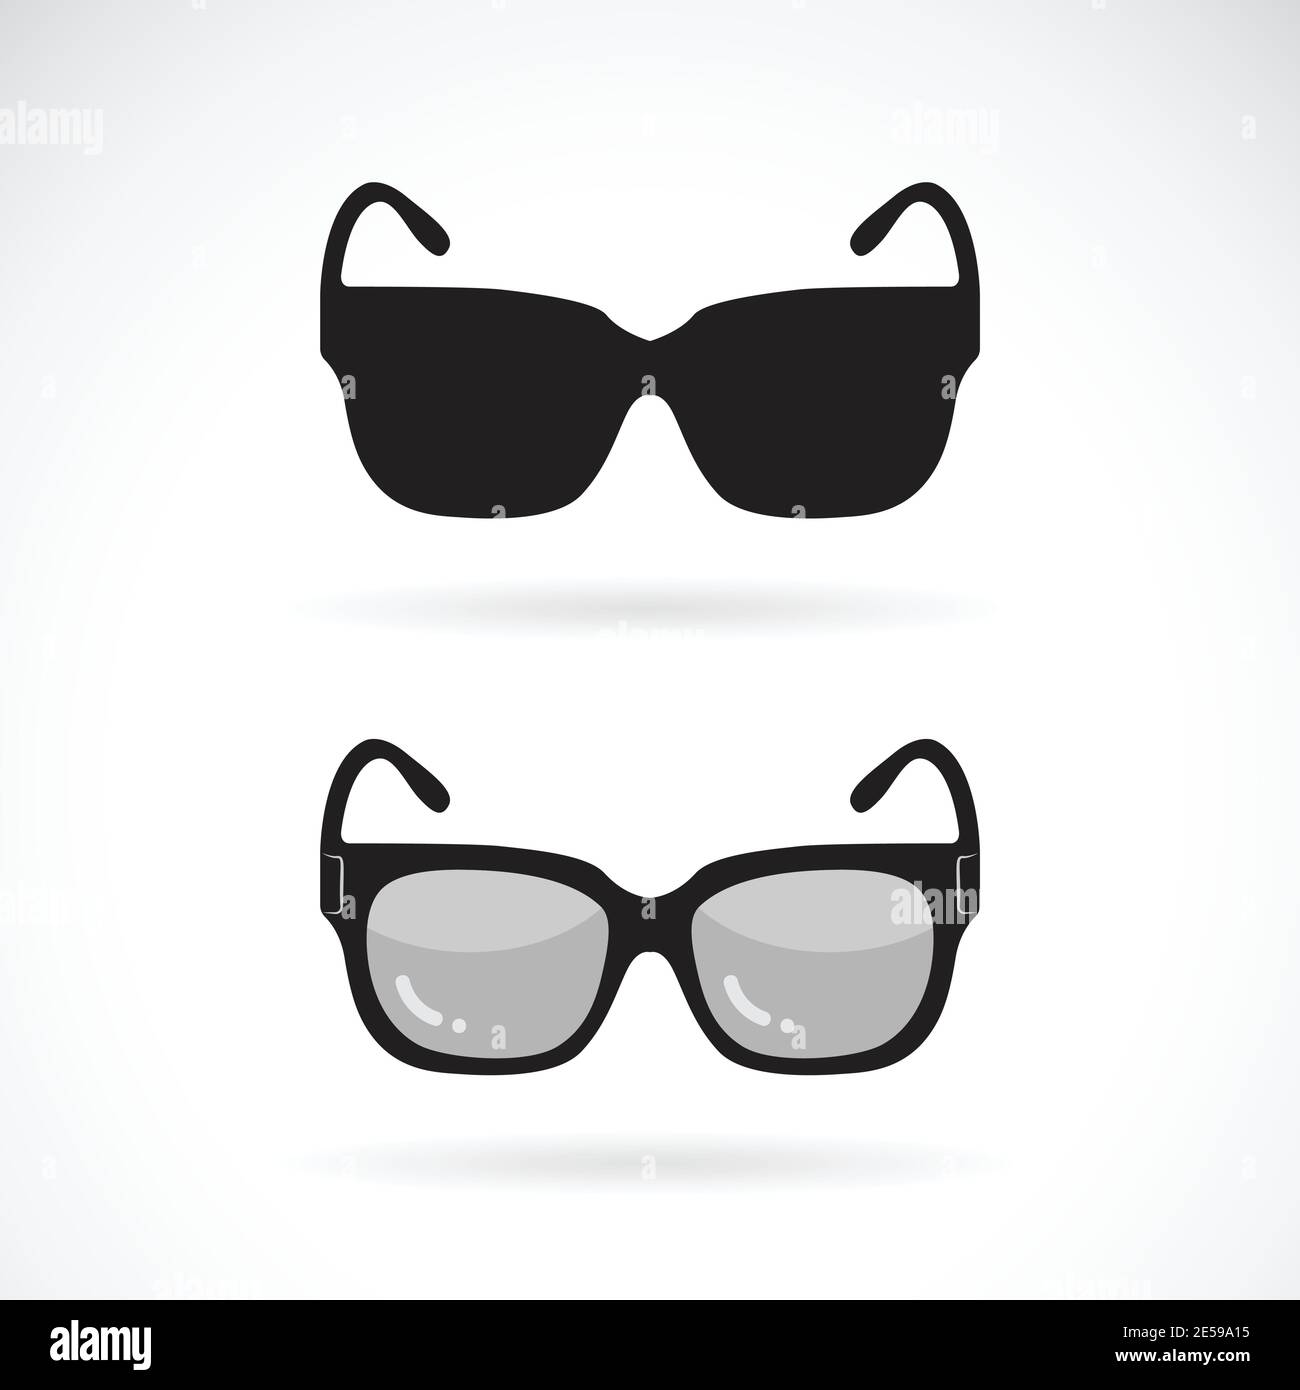 Motif vectoriel de lunettes de soleil sur fond blanc. Icône ou logo lunettes de soleil. Illustration vectorielle superposée facile à modifier. Illustration de Vecteur